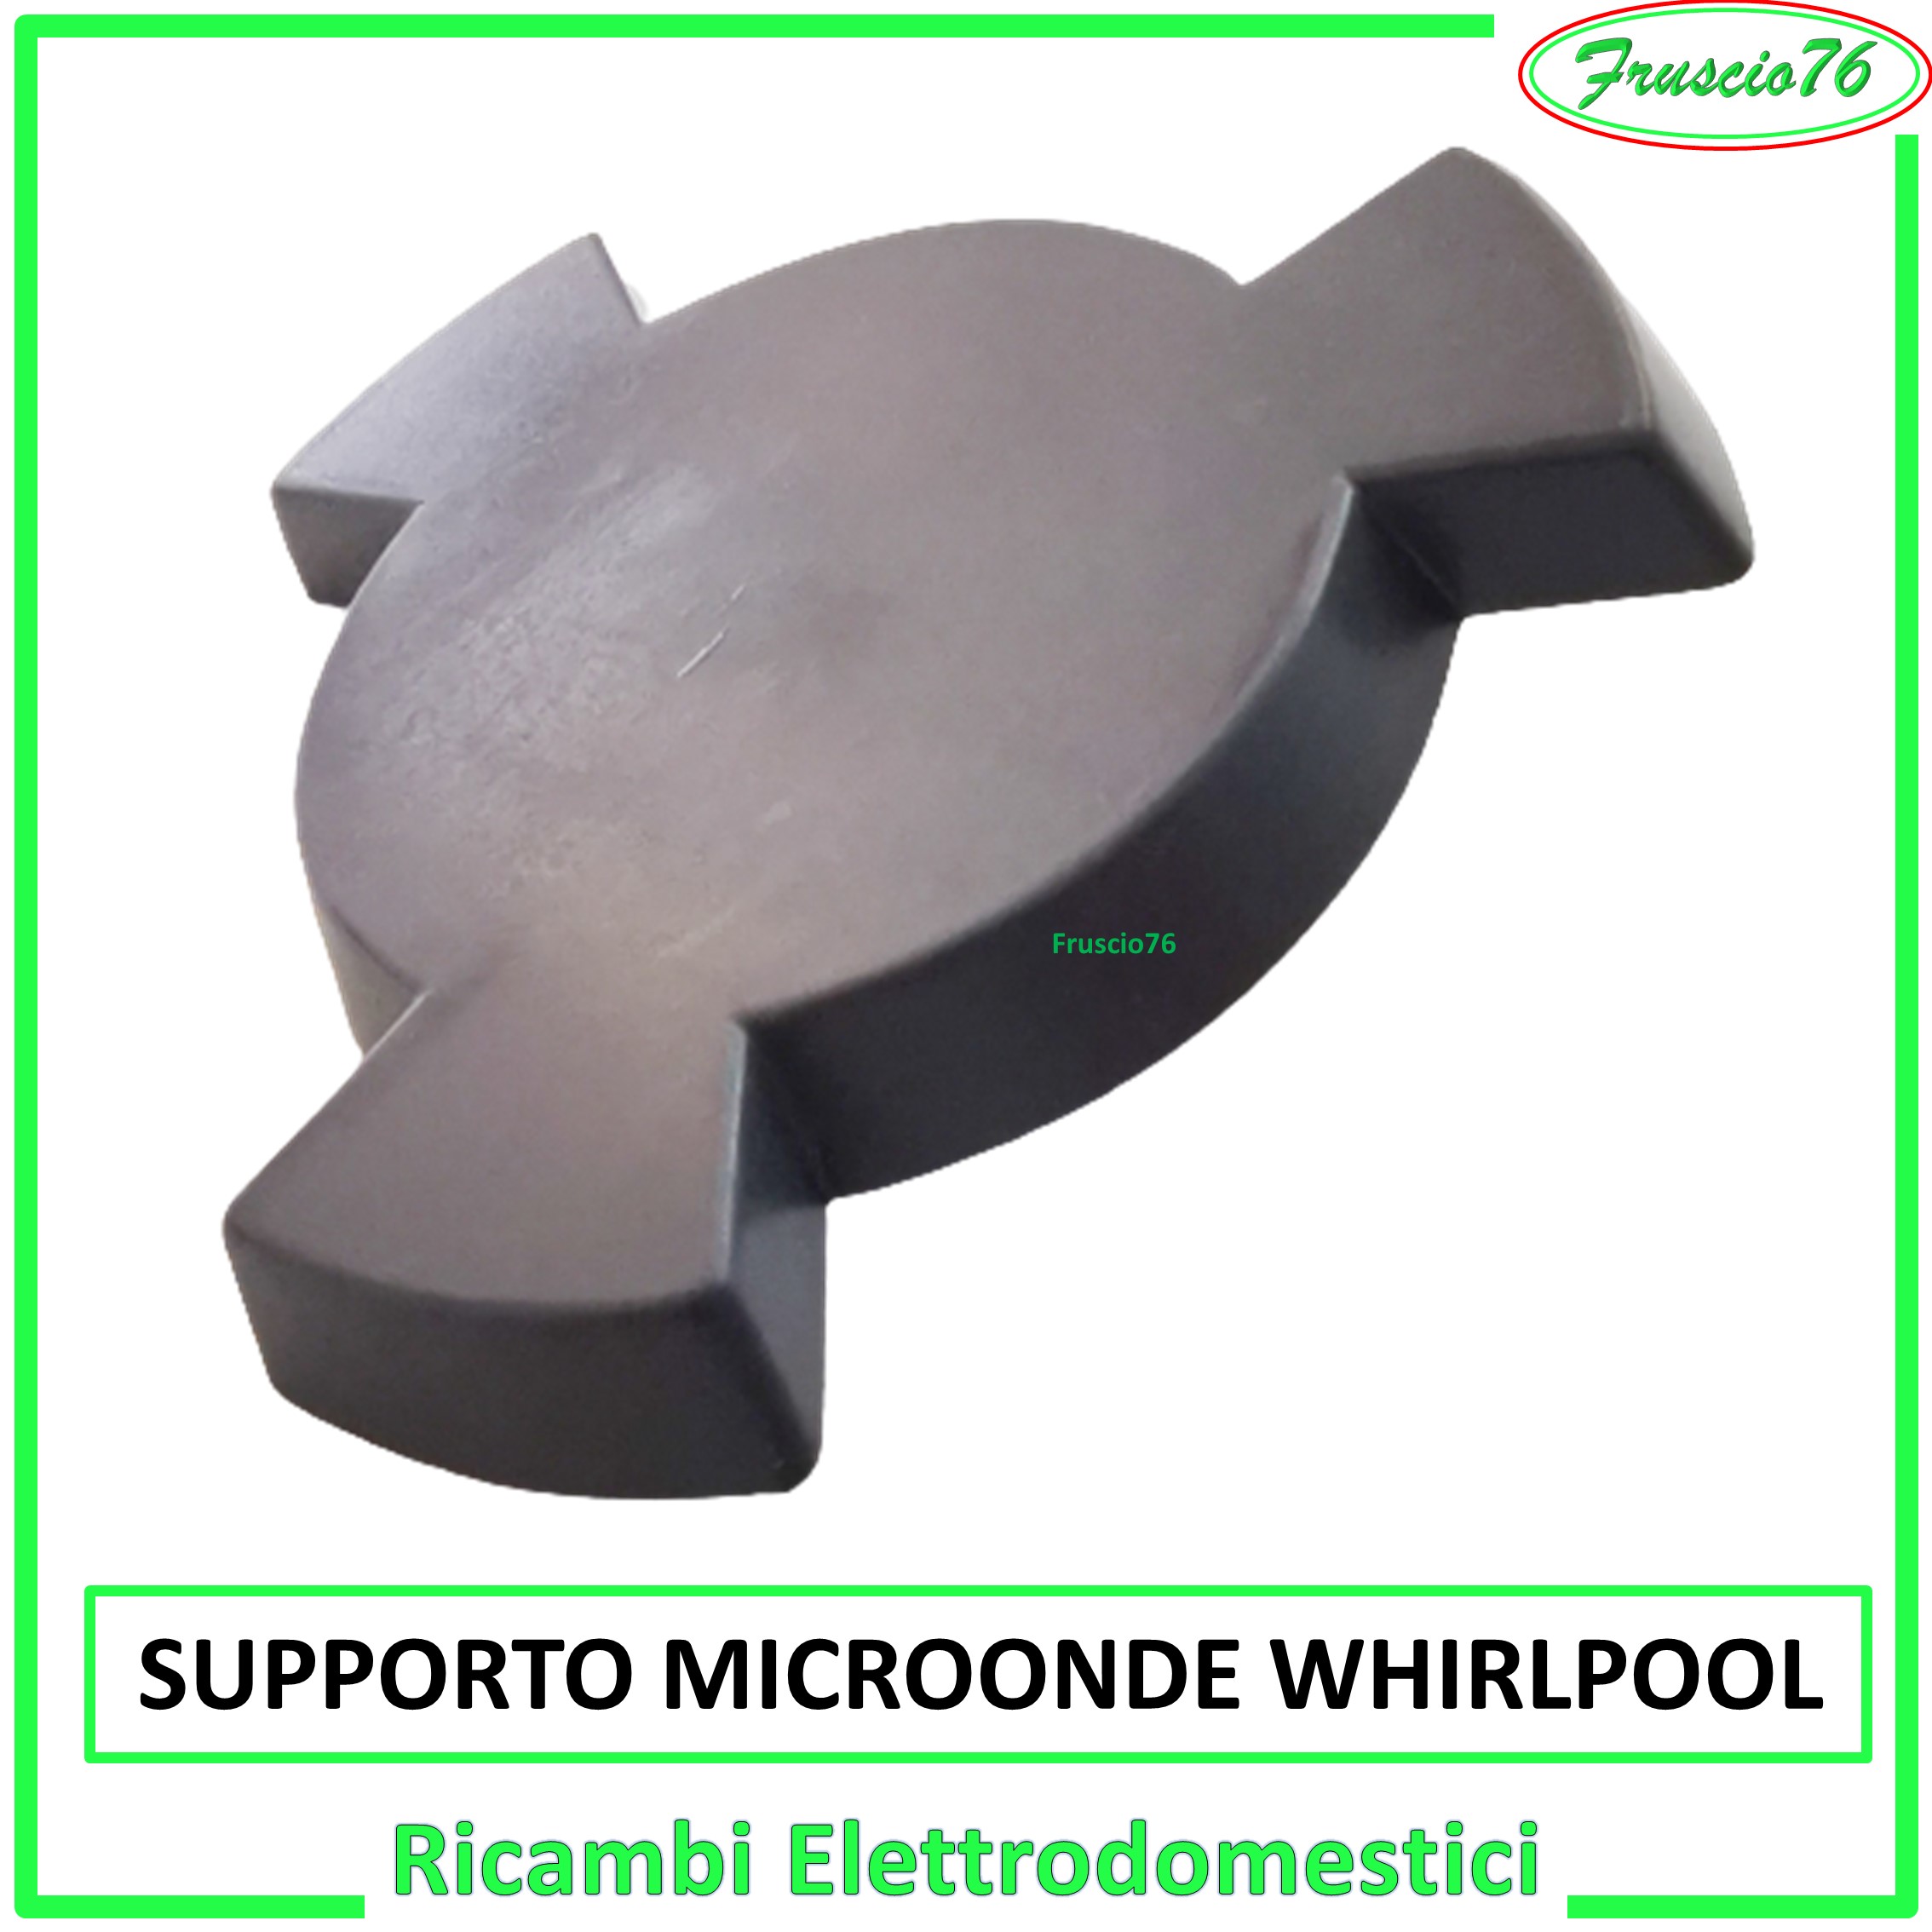 Supporto per Piatto Forno a Microonde Whirlpool Ricambi Grigio H20 481246238161